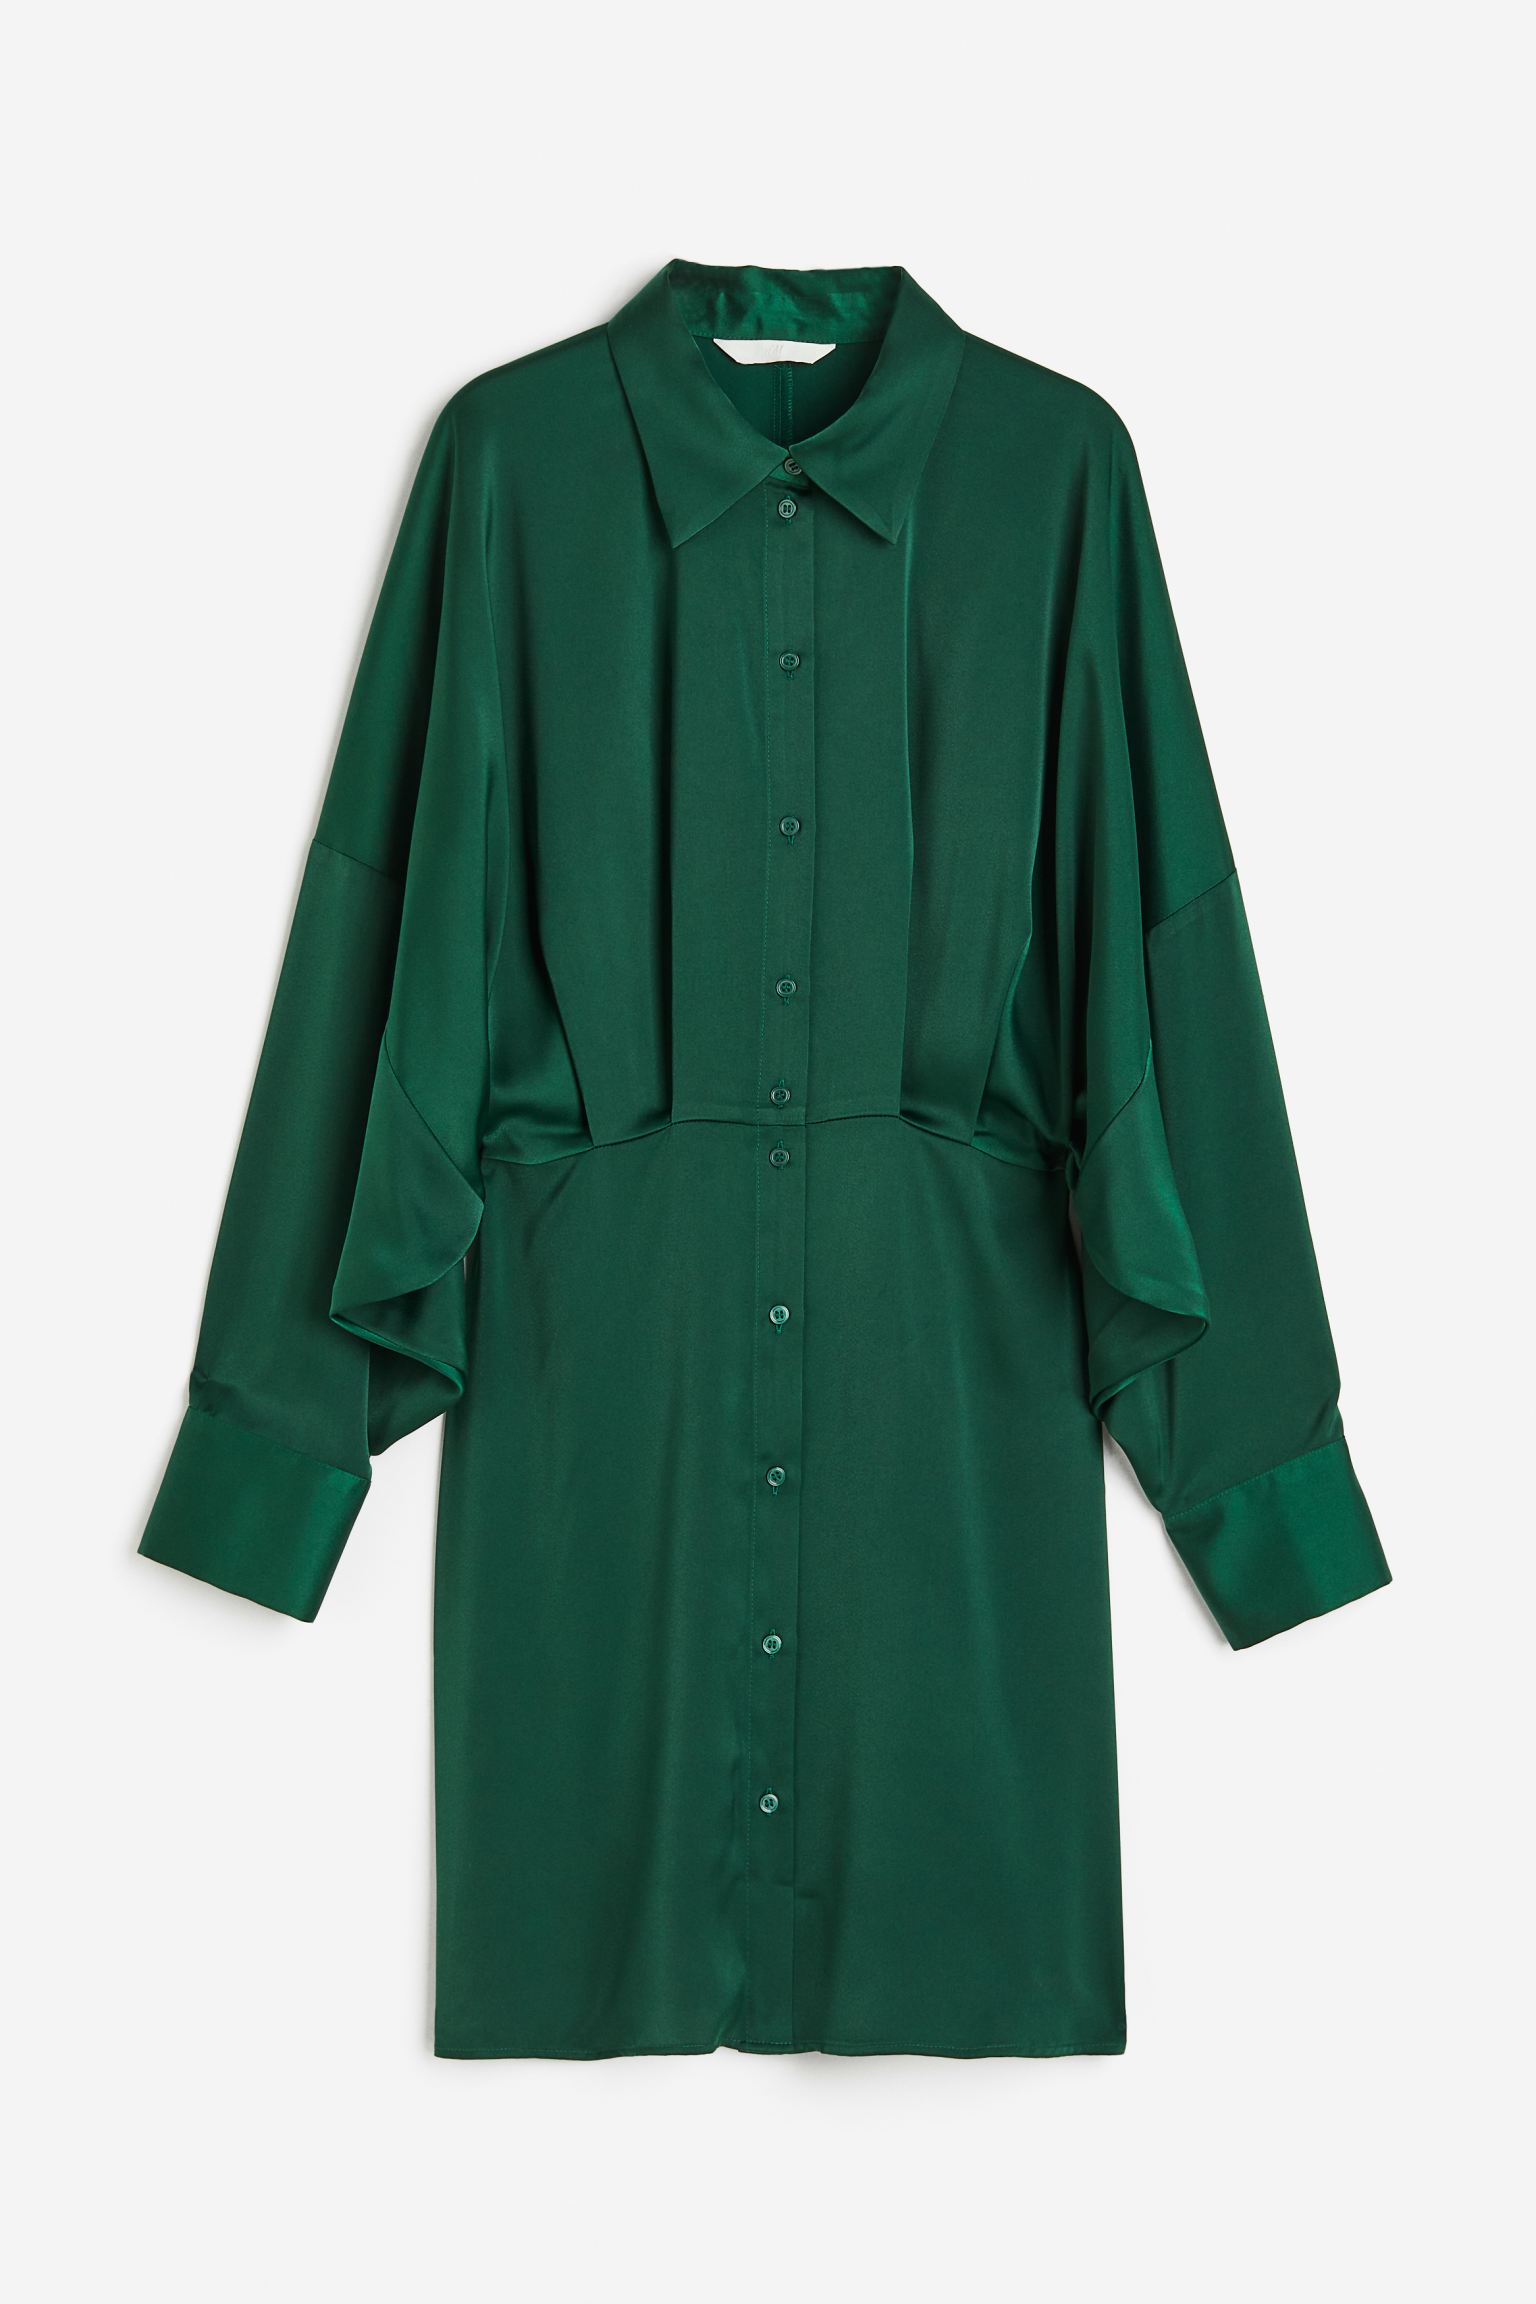 Dieses Kleid in sattem Waldgrün kann bei der Arbeit oder in der Freizeit getragen werden.